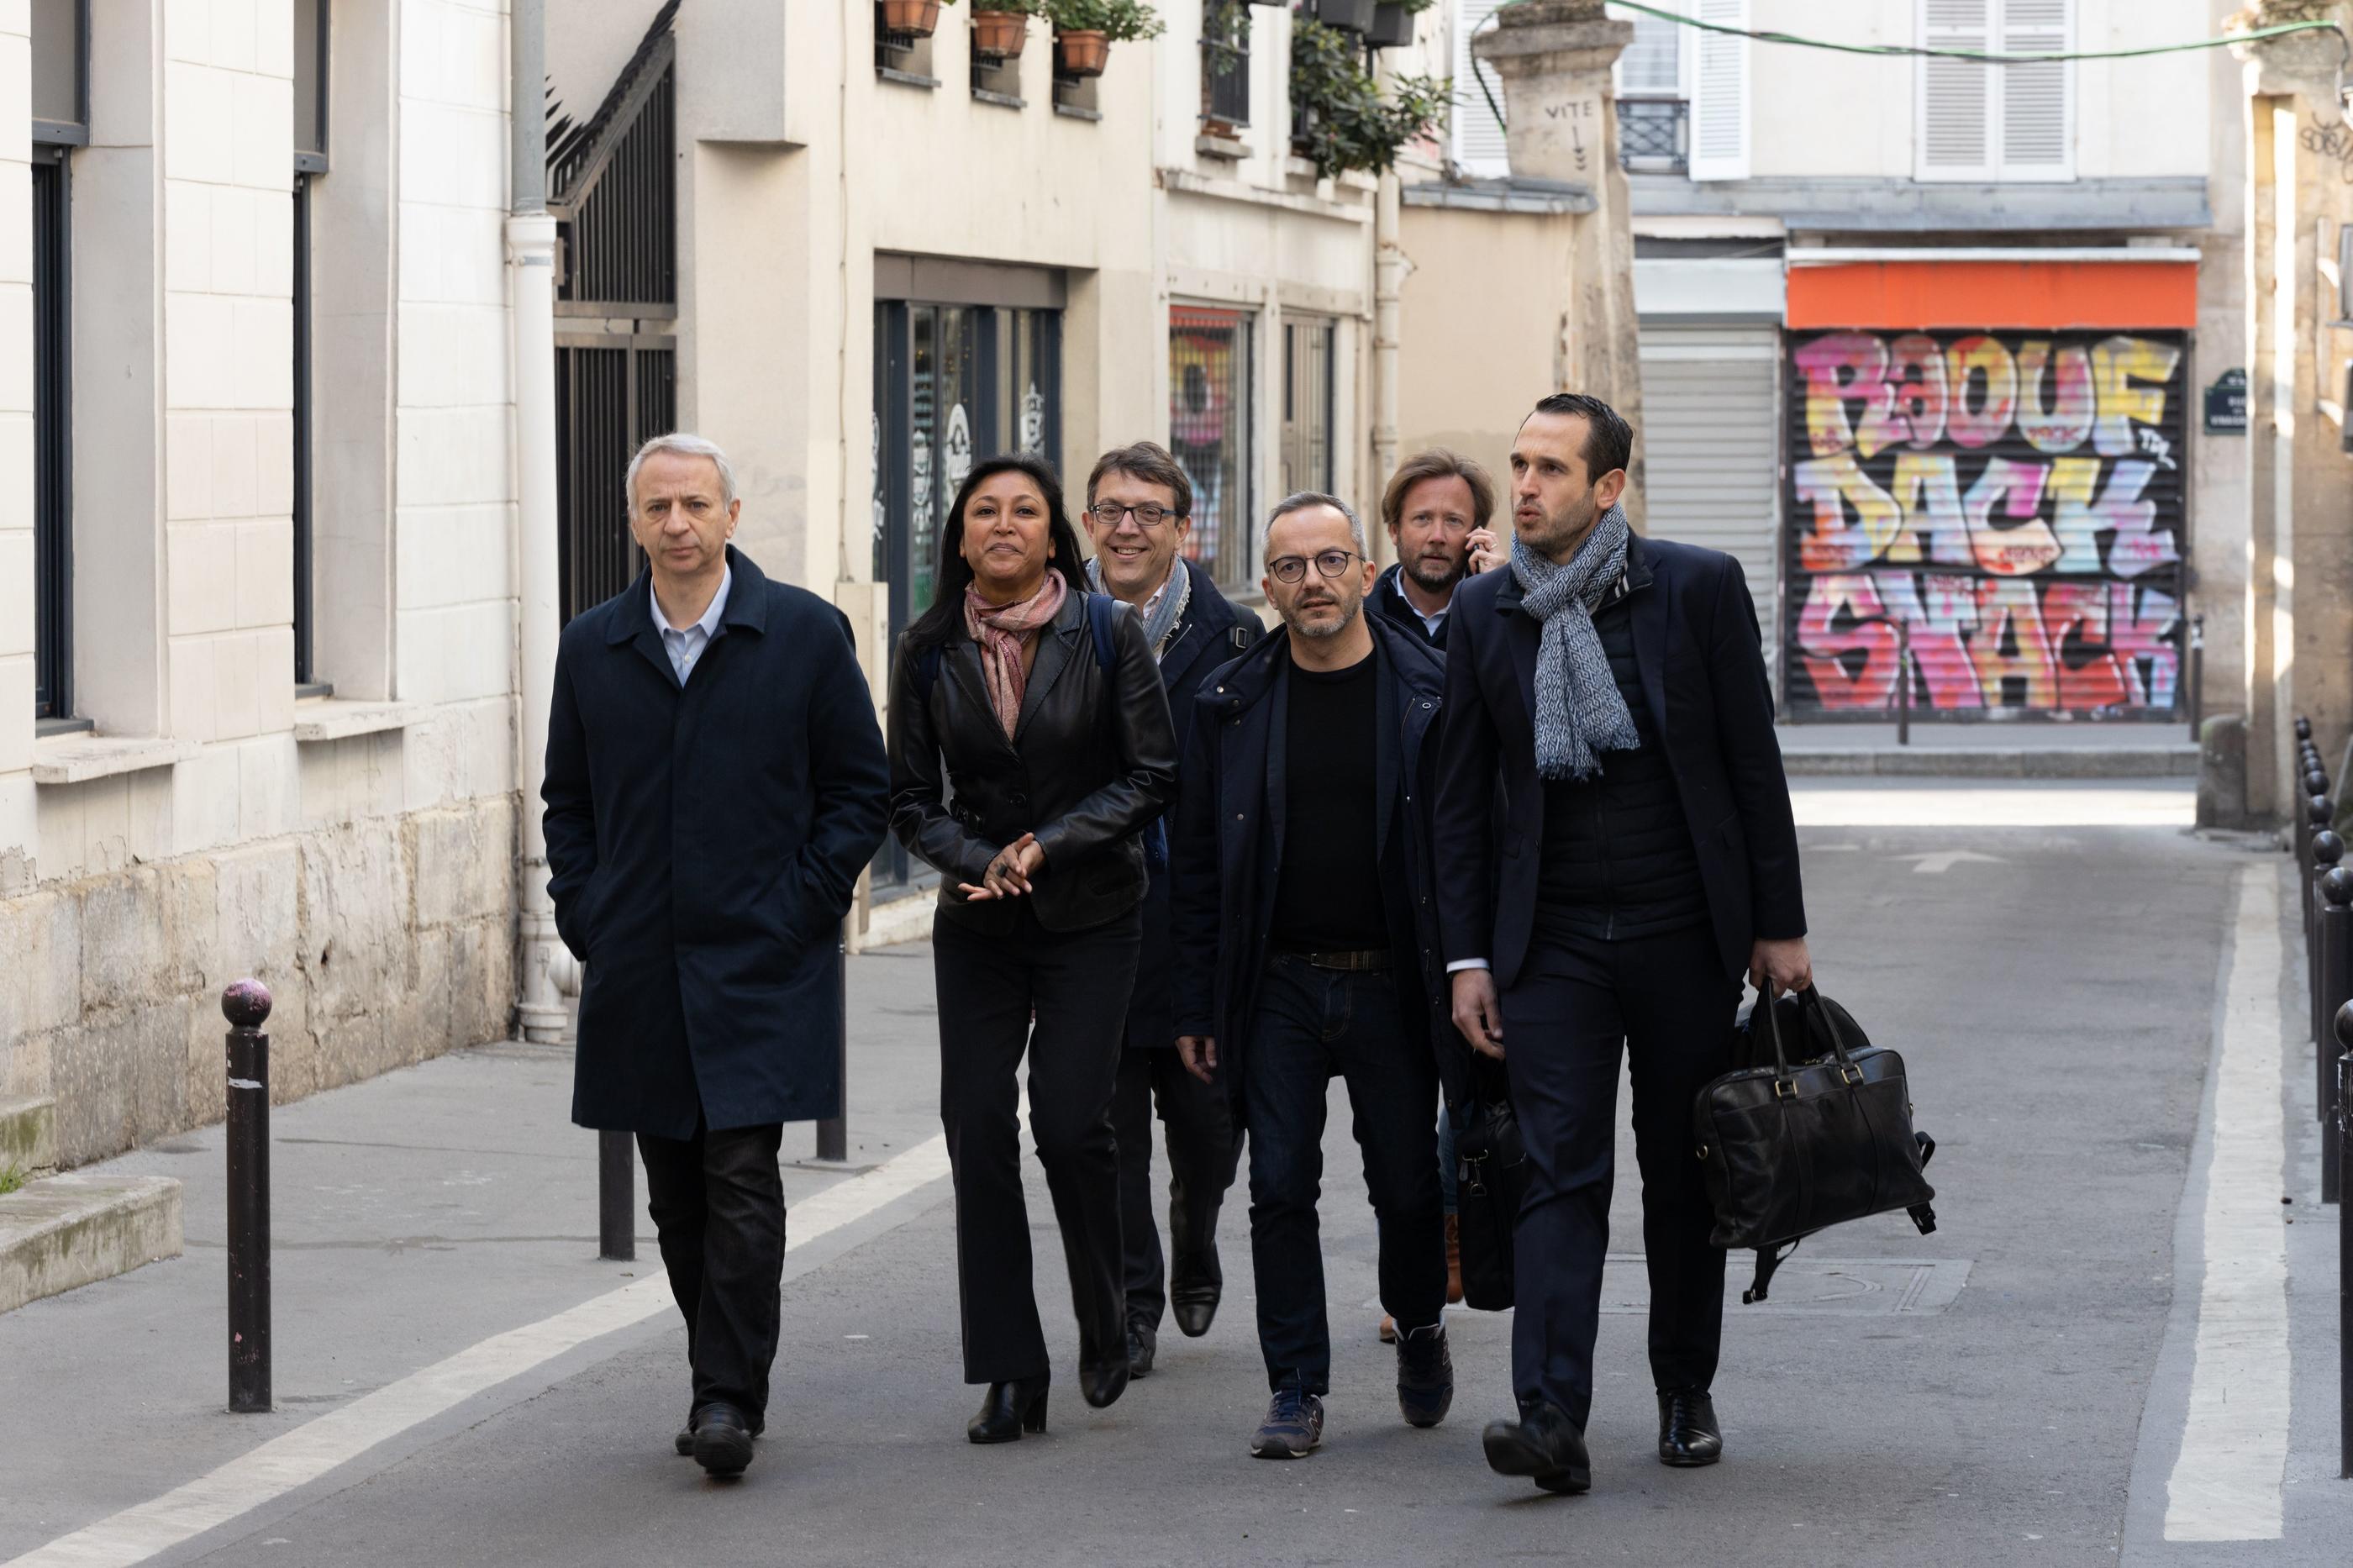 Mercredi 27 avril, une délégation du « Parti socialiste » était invitée au siège du parti « La France Insoumise » pour se concerter sur une potentielle union de la gauche pour les législatives.  LP/Stephane Duprat